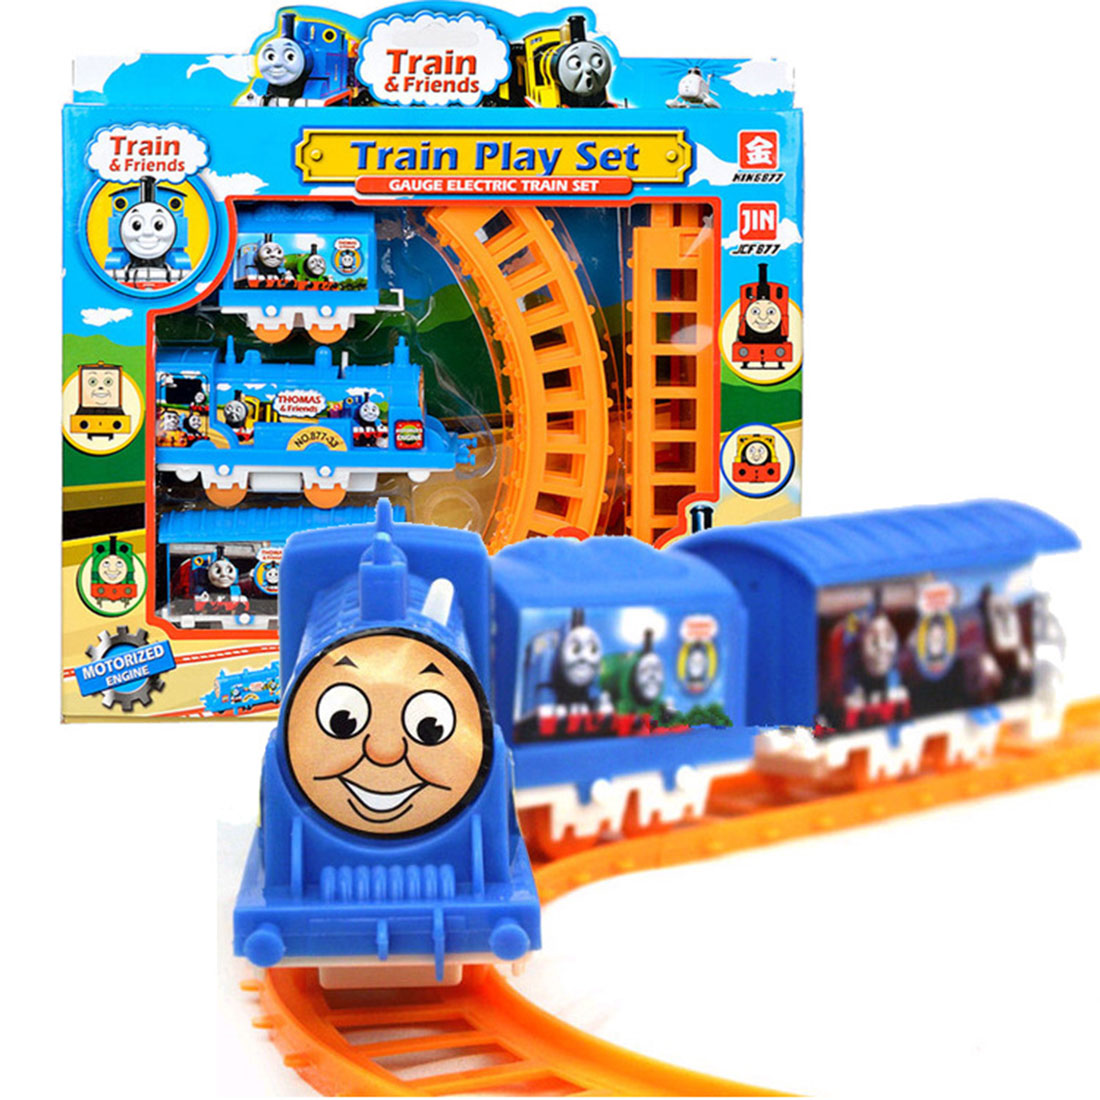 Plastic Thomas Electric Train Tracks Play Set Educational